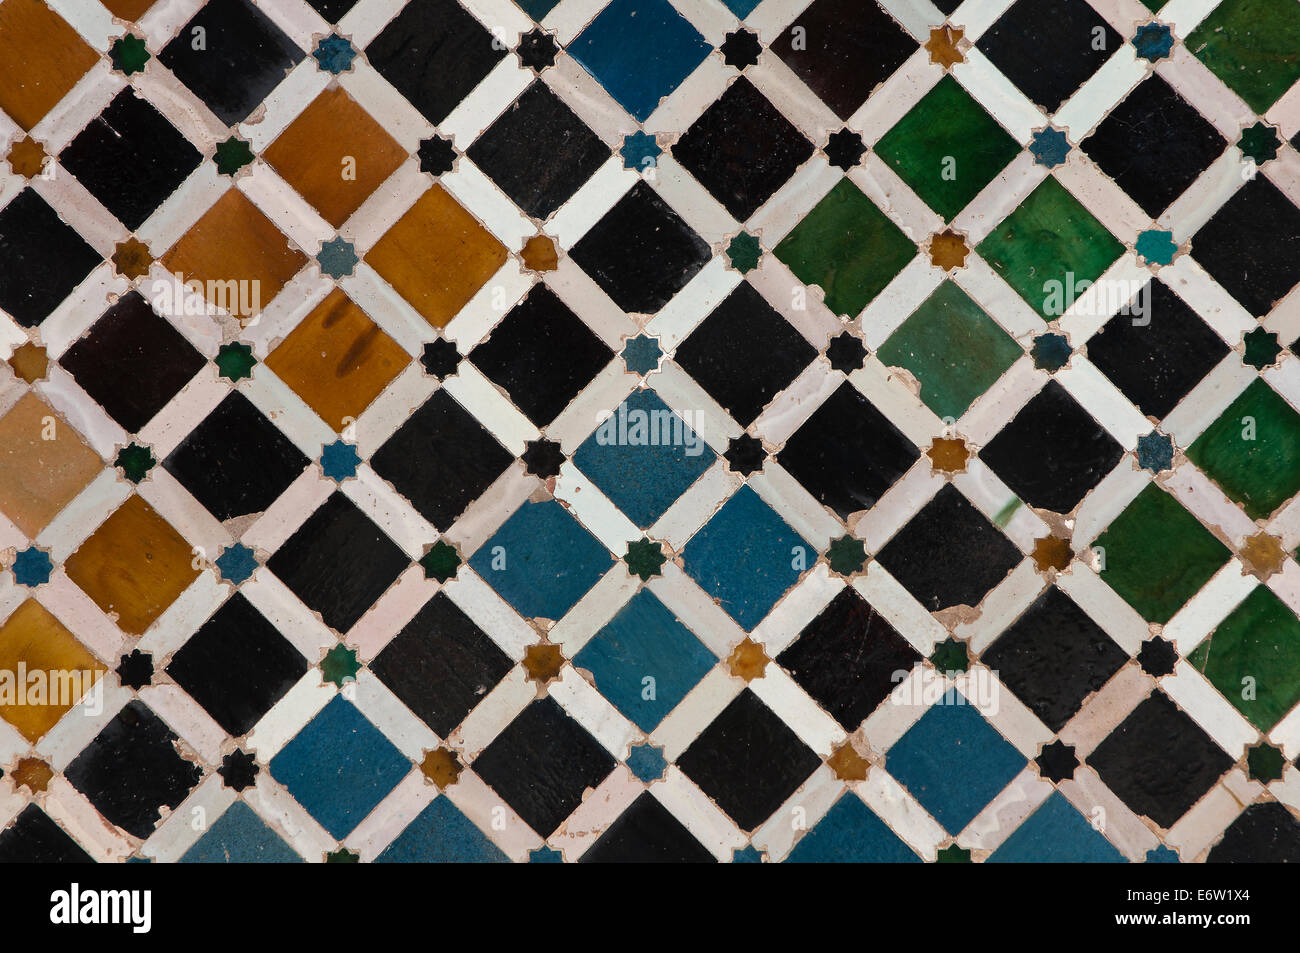 Corte dei mirti - piastrelle arabo, l'Alhambra di Granada, regione dell'Andalusia, Spagna, Europa Foto Stock